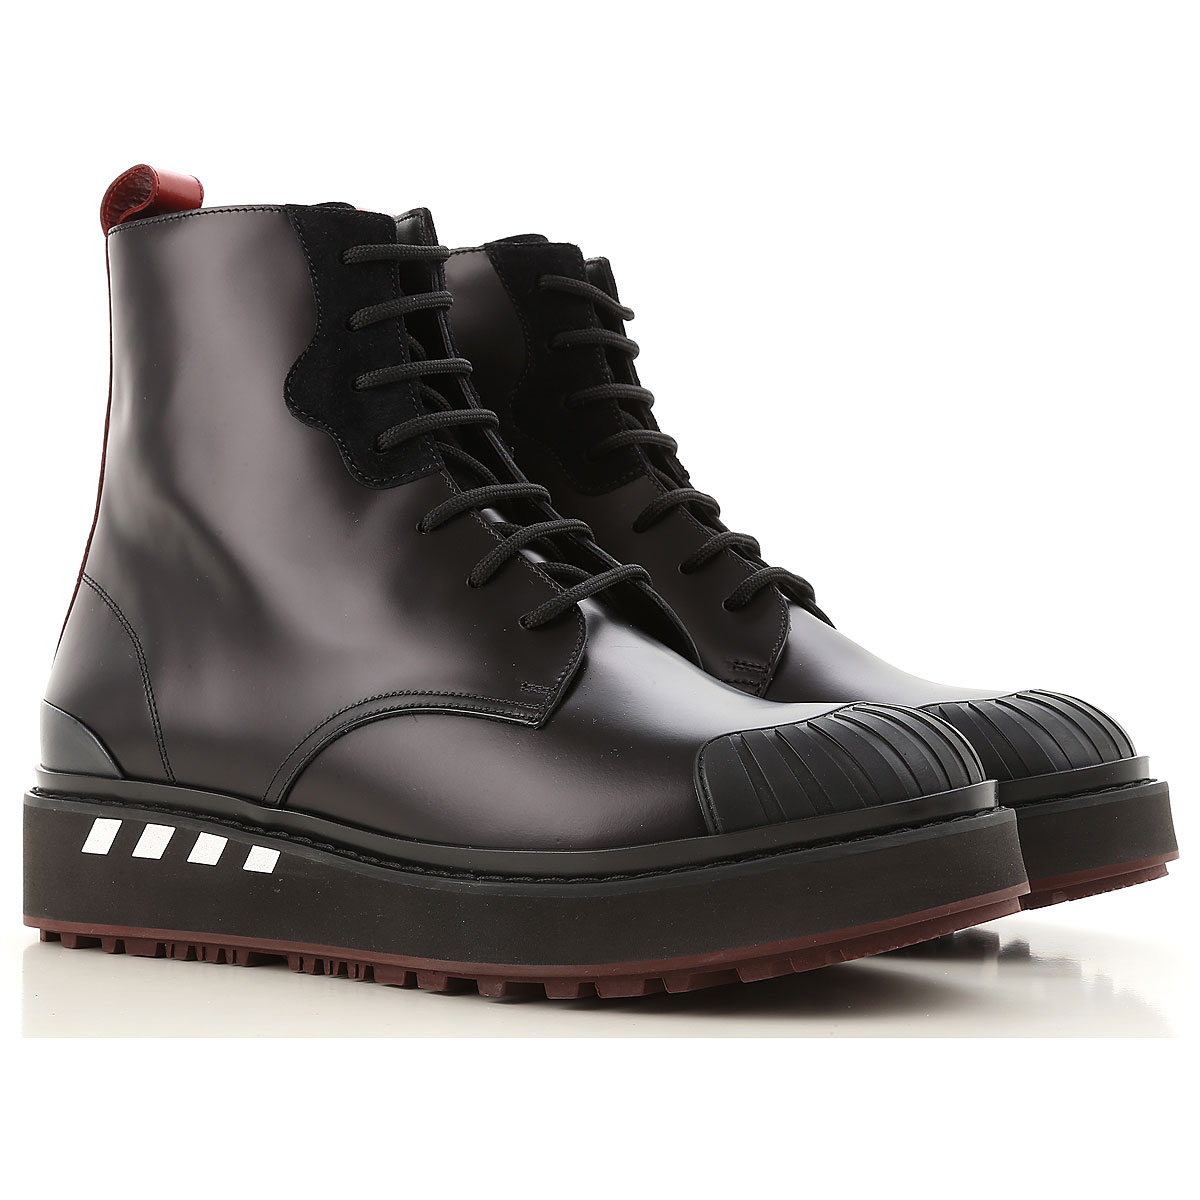 Mens Shoes Valentino Garavani, Style code: qy2s0b14-azk-dfm